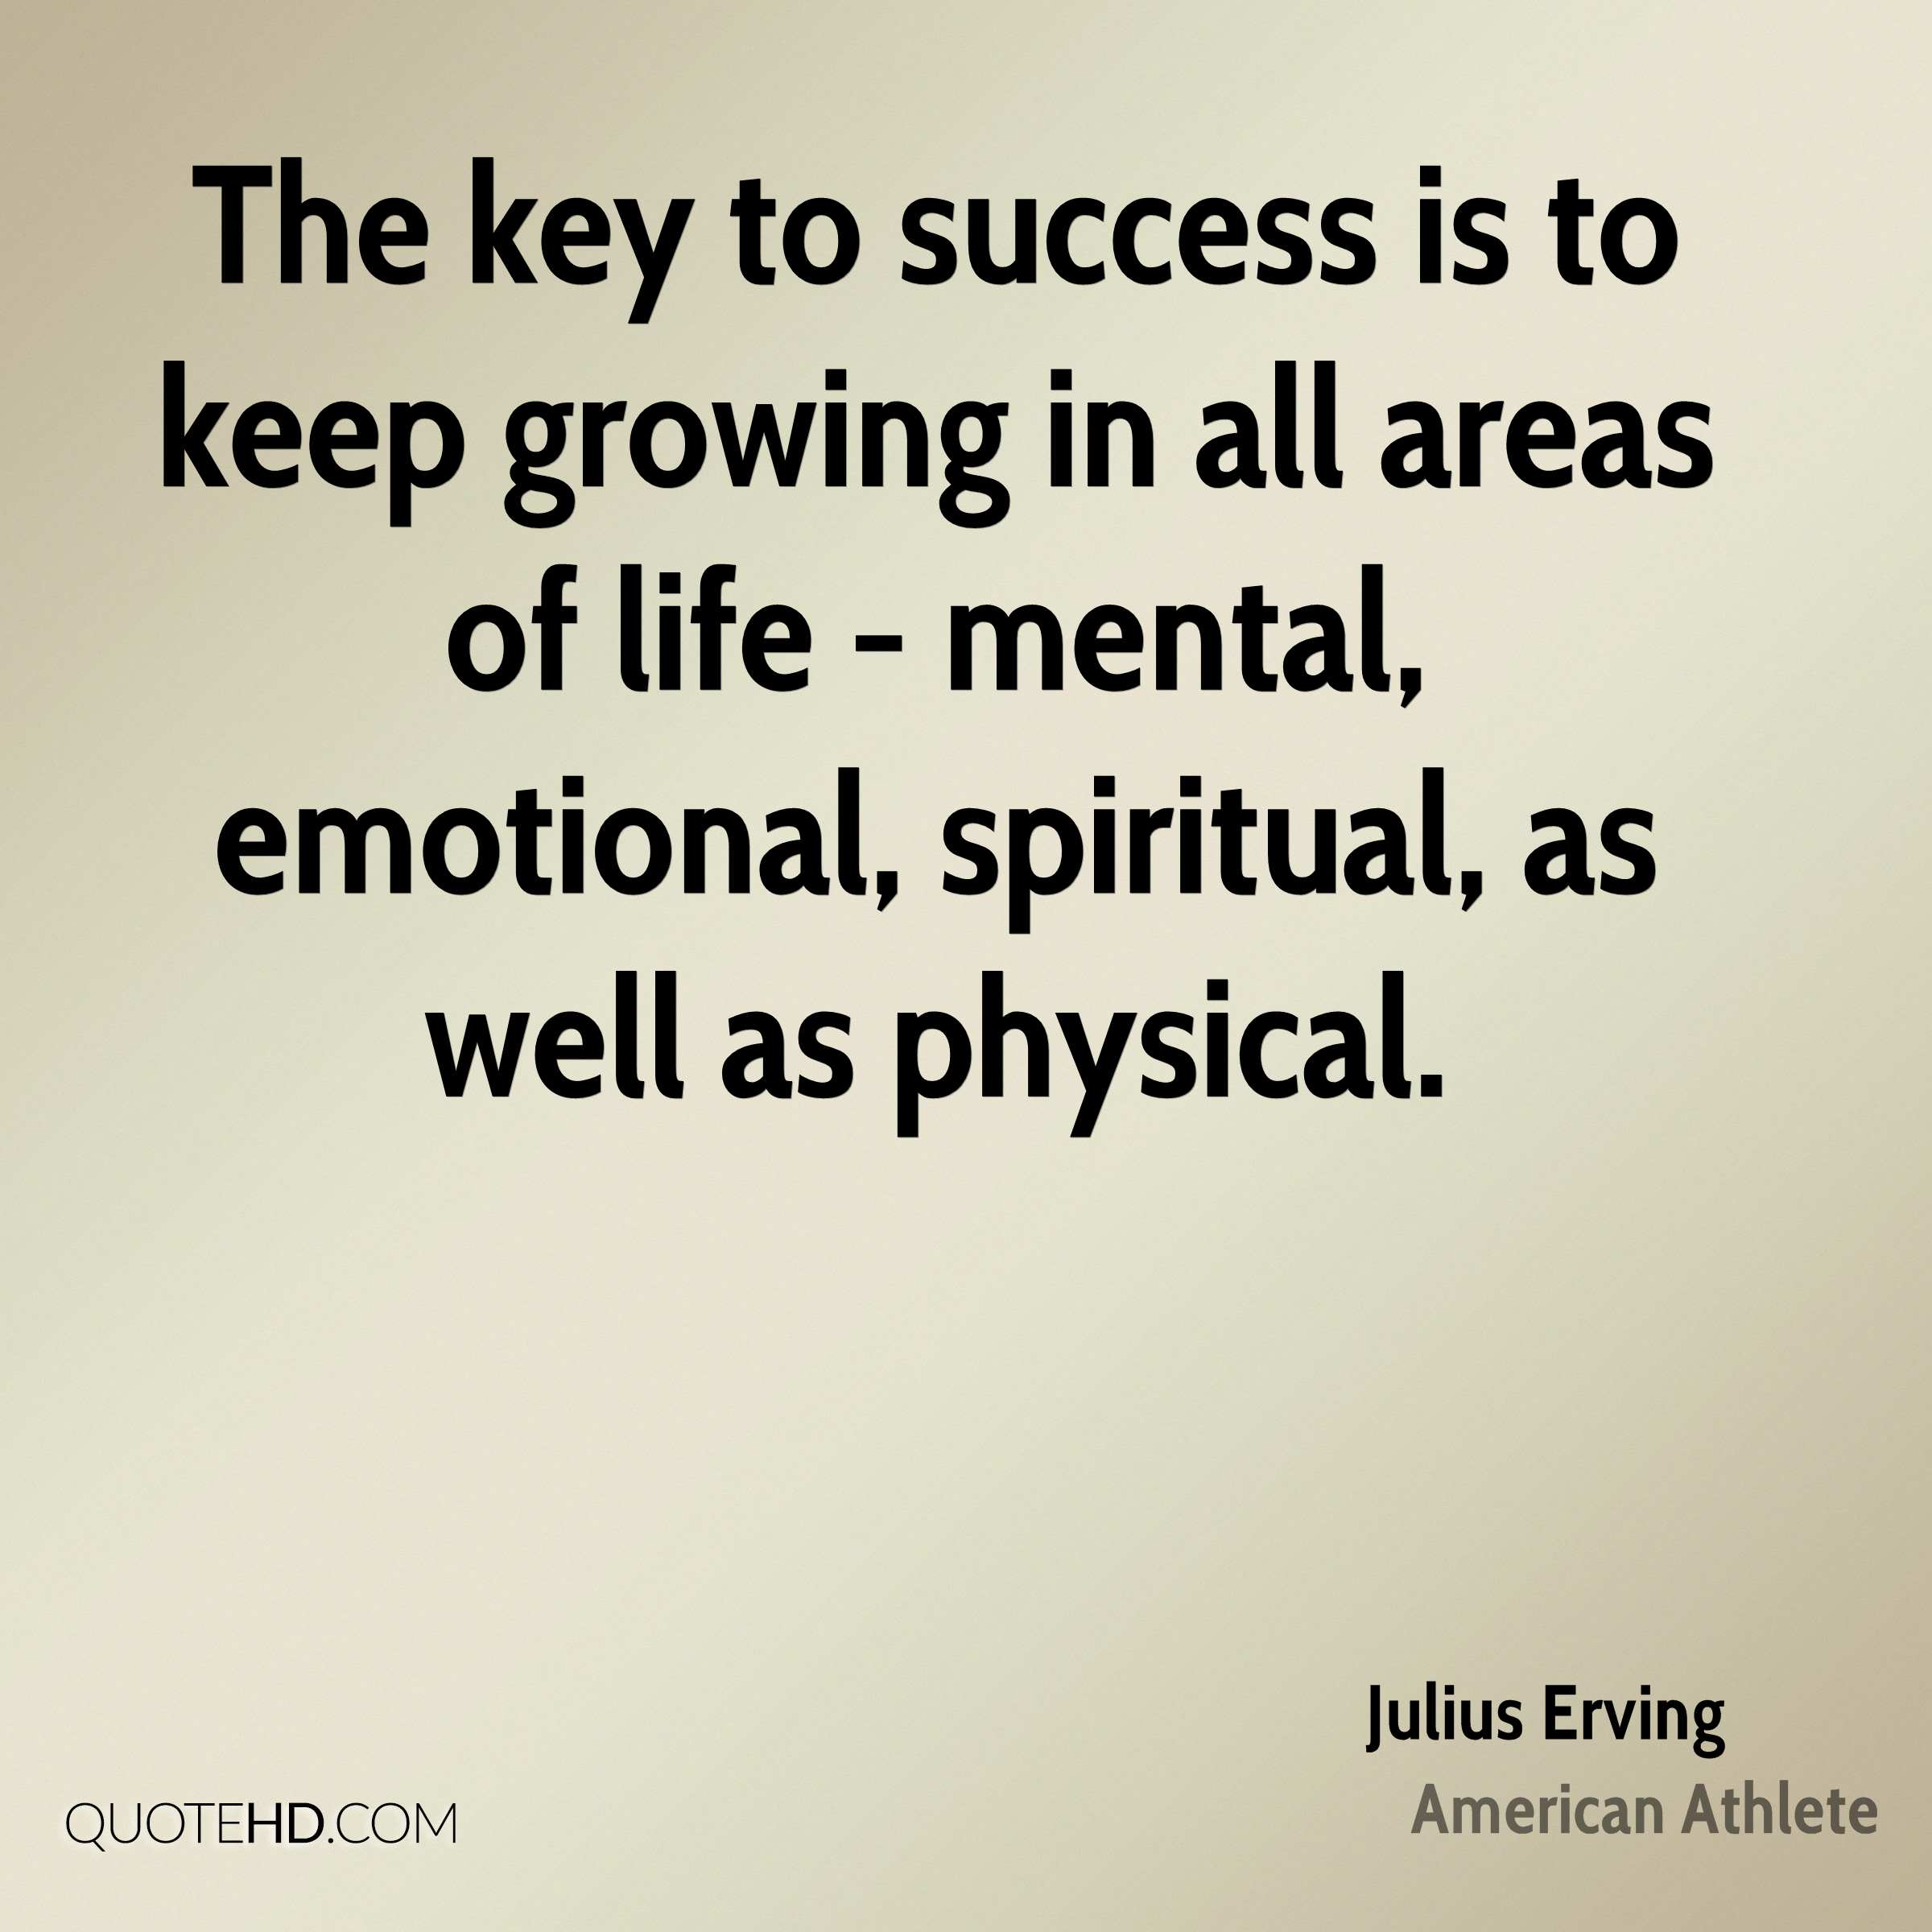 Julius Erving Success Quotes | QuoteHD